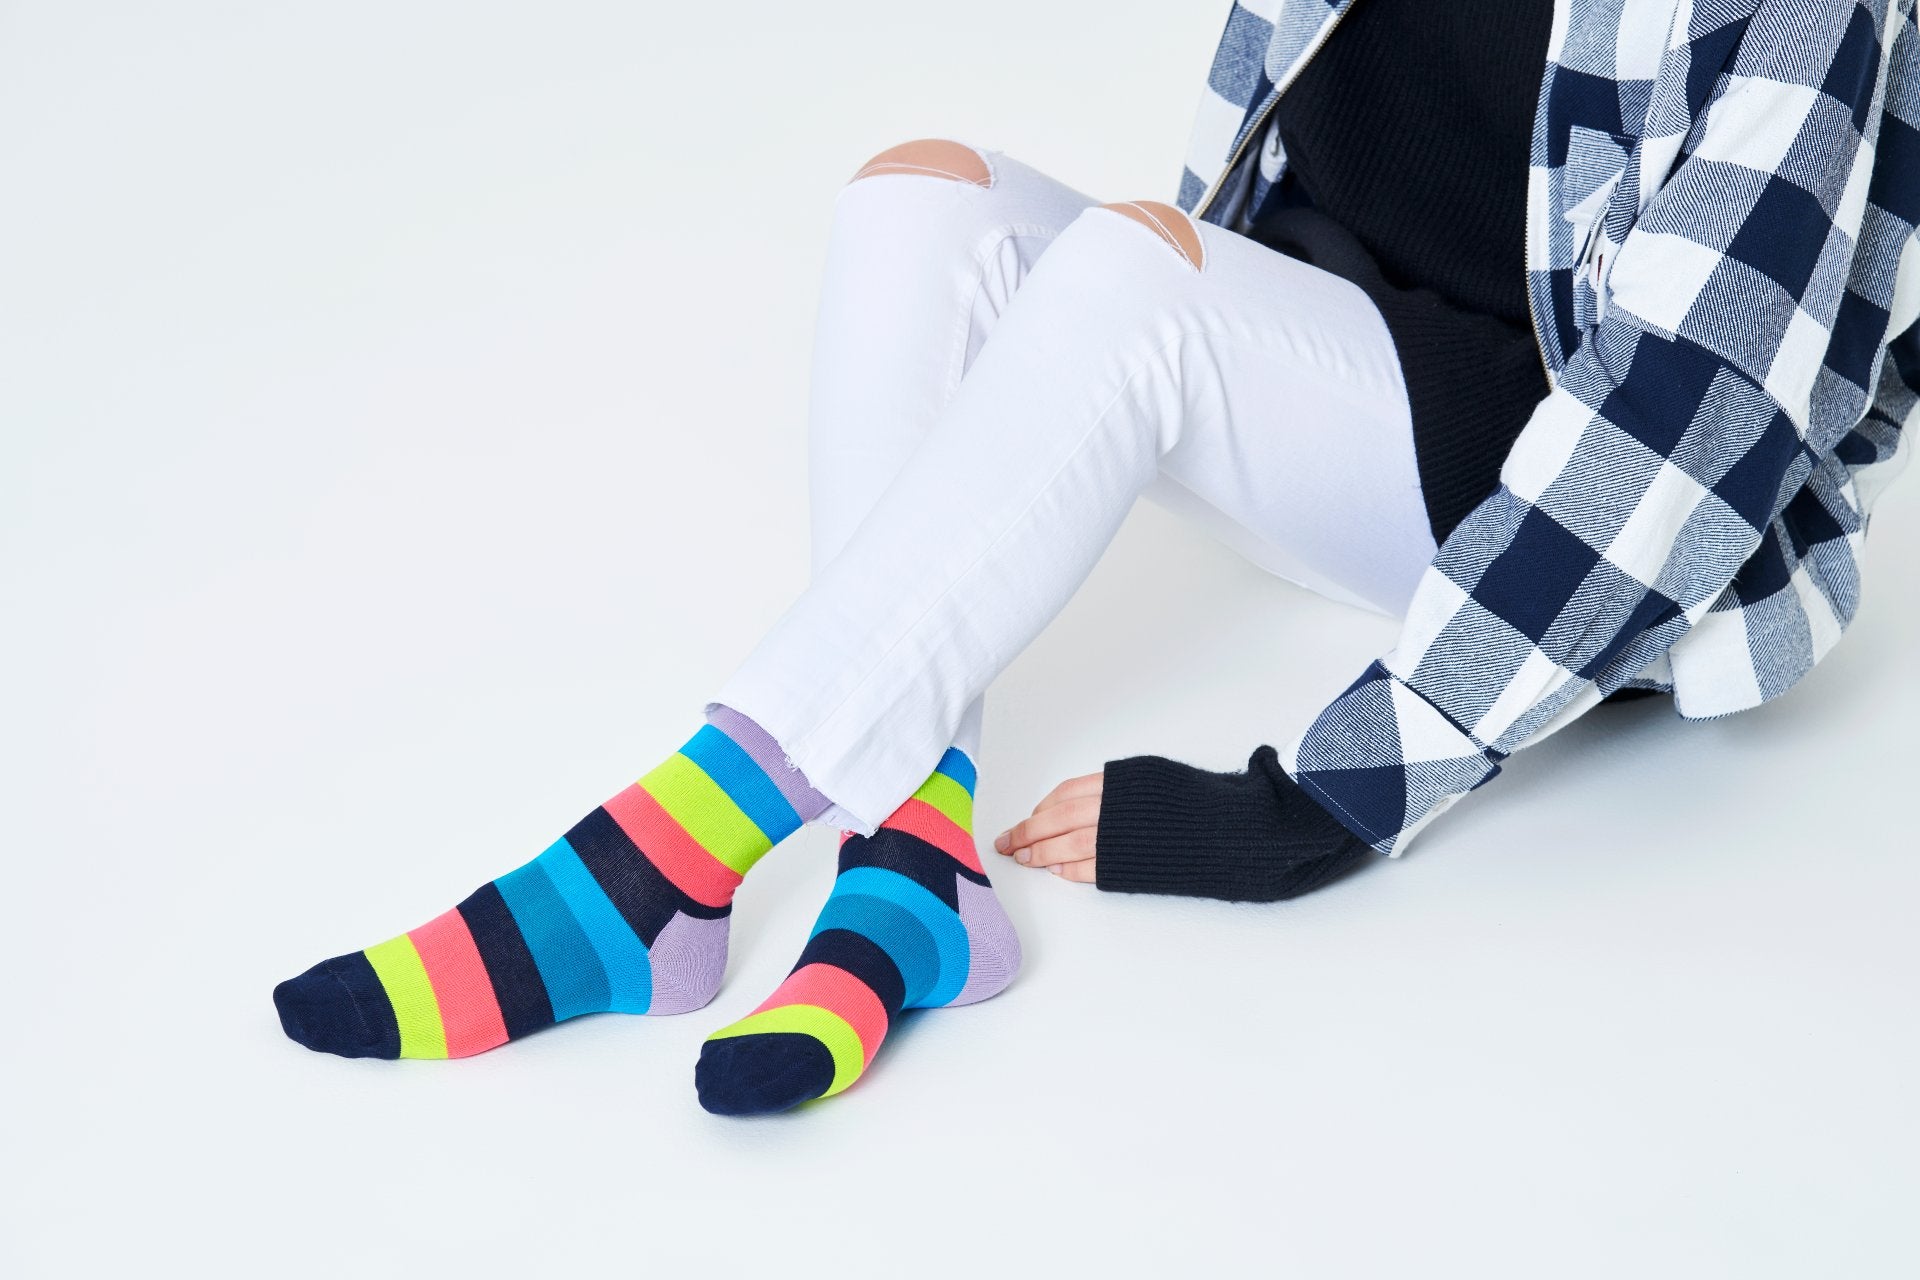 Barevné ponožky Happy Socks s pruhy, vzor Stripe